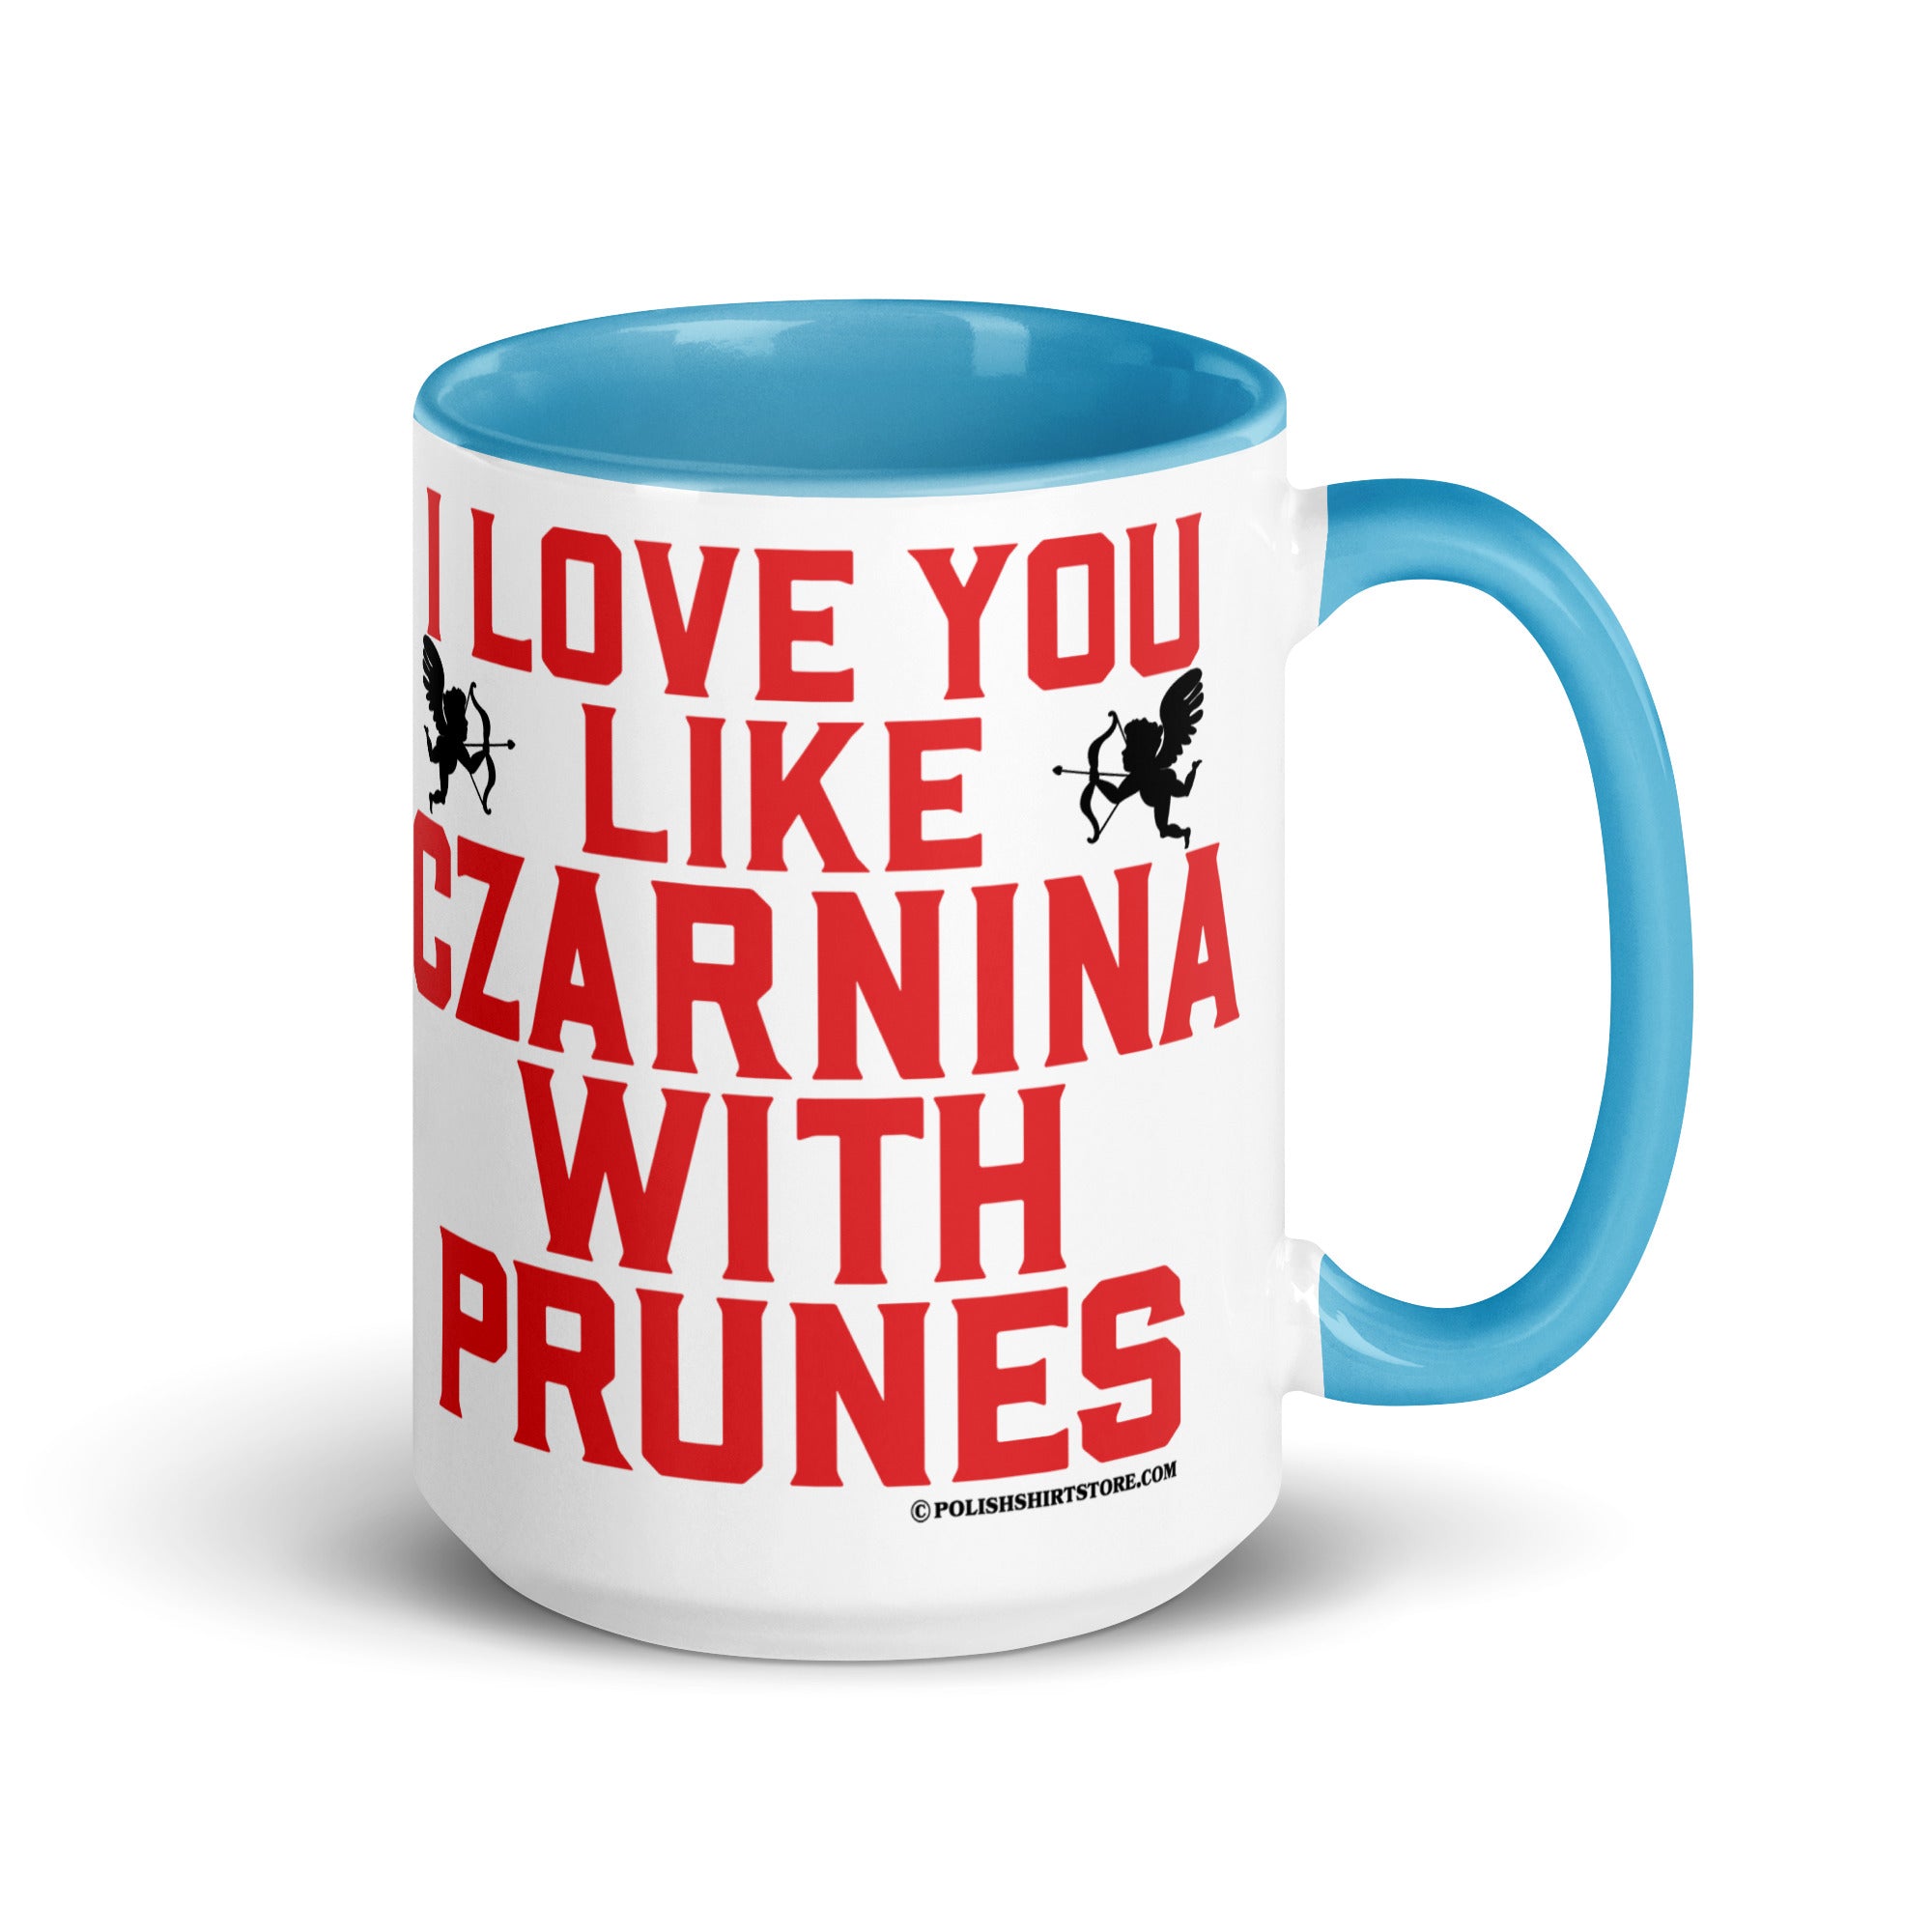 I Love You Like Czarnina With Prunes Coffee Mug with Color Inside  Polish Shirt Store Blue 15 oz 